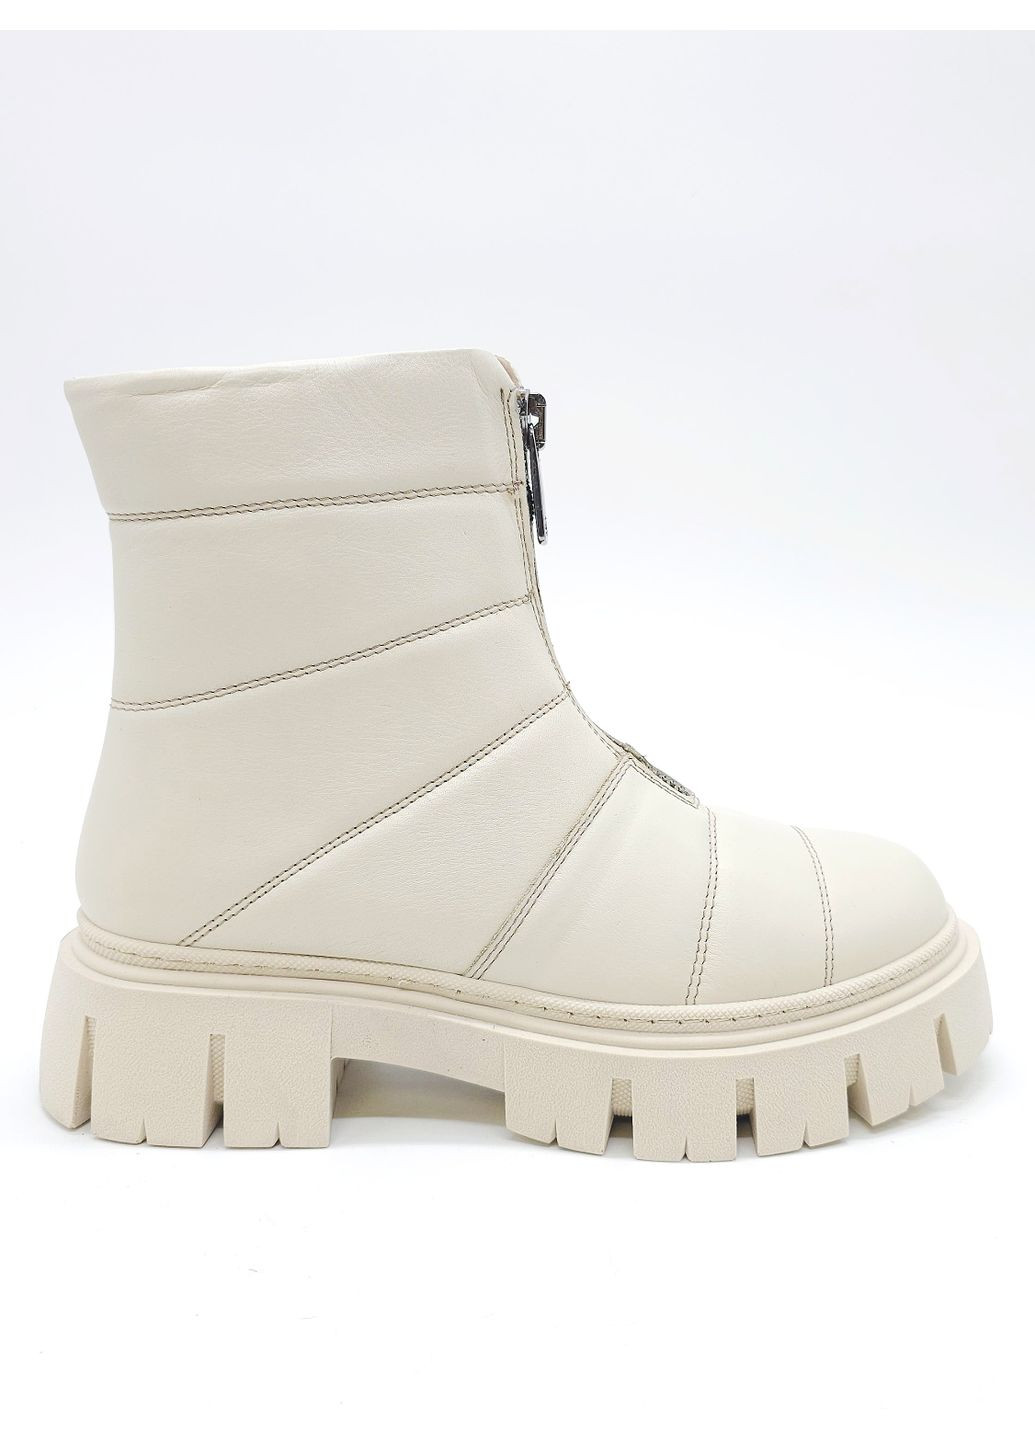 Осенние женские ботинки зимние бежевые кожаные at-21-2 23,5 см (р) ALTURA